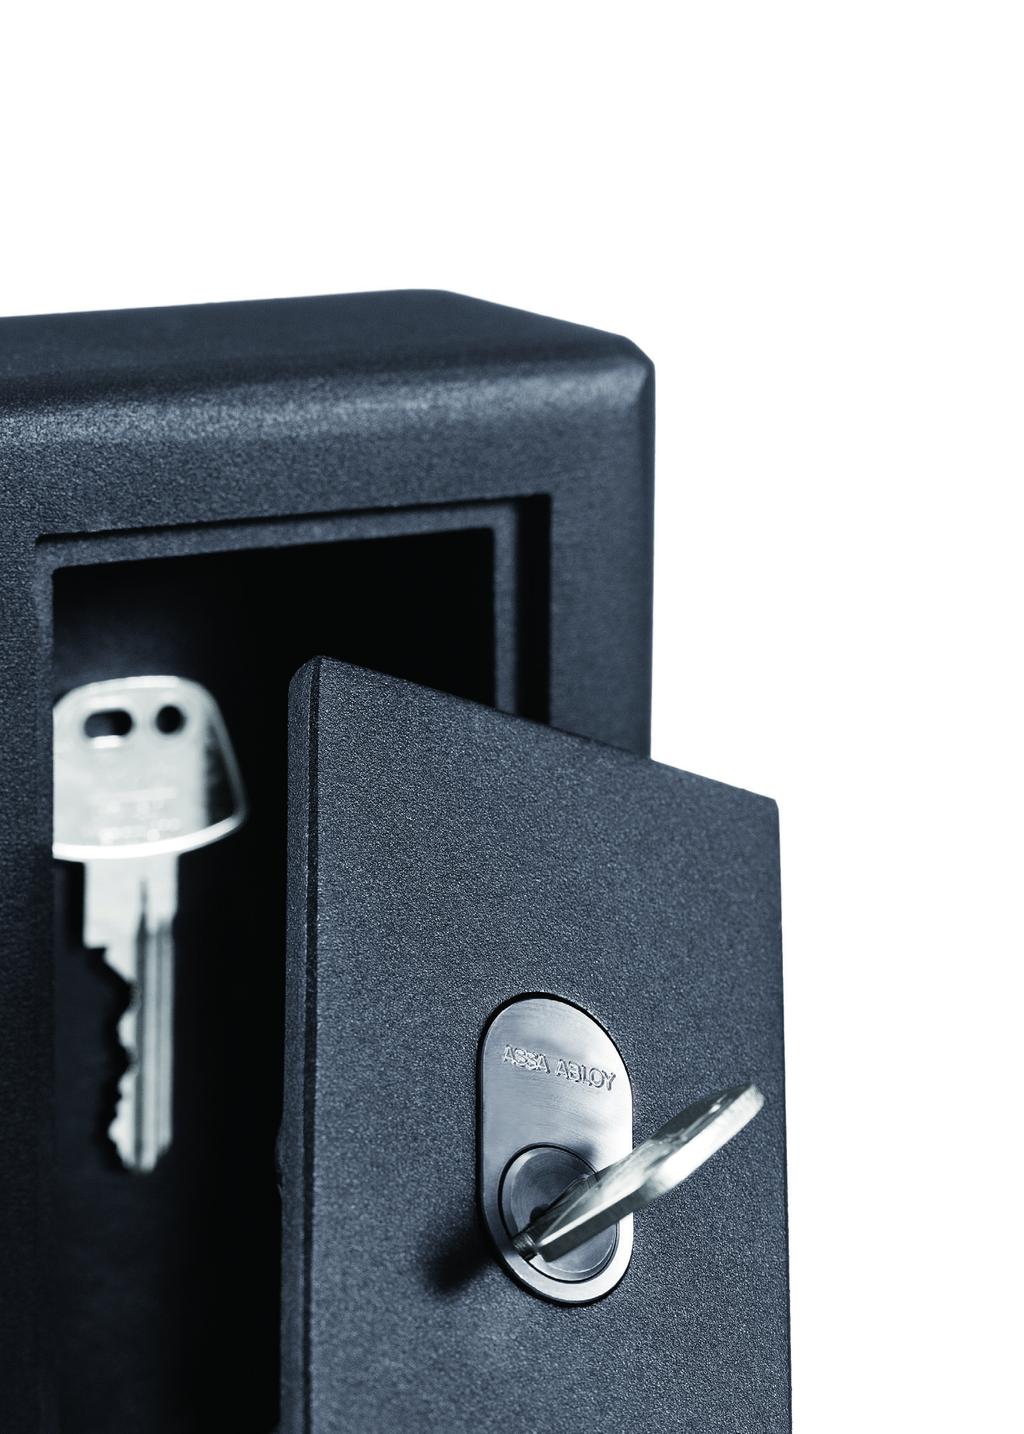 Til private boliger kan man fx anvende KS3 boksen, som er en solid nøgleboks med mekanisk